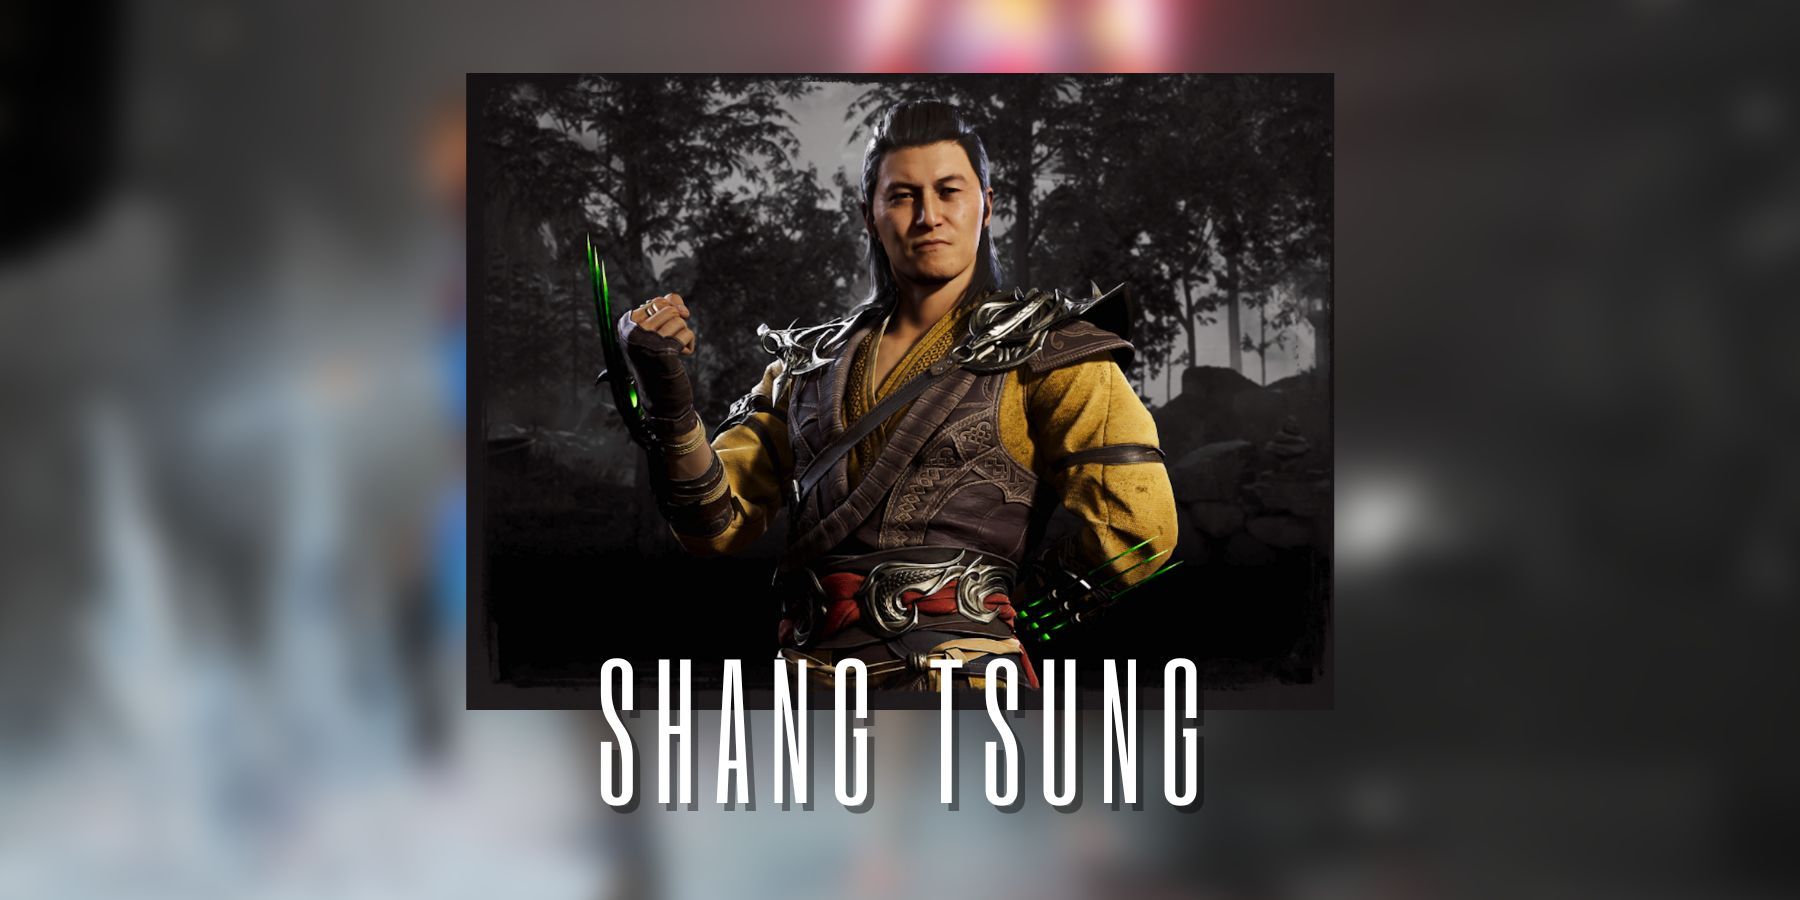 MORTAL KOMBAT 1 Shang Tsung All Intros MK1 